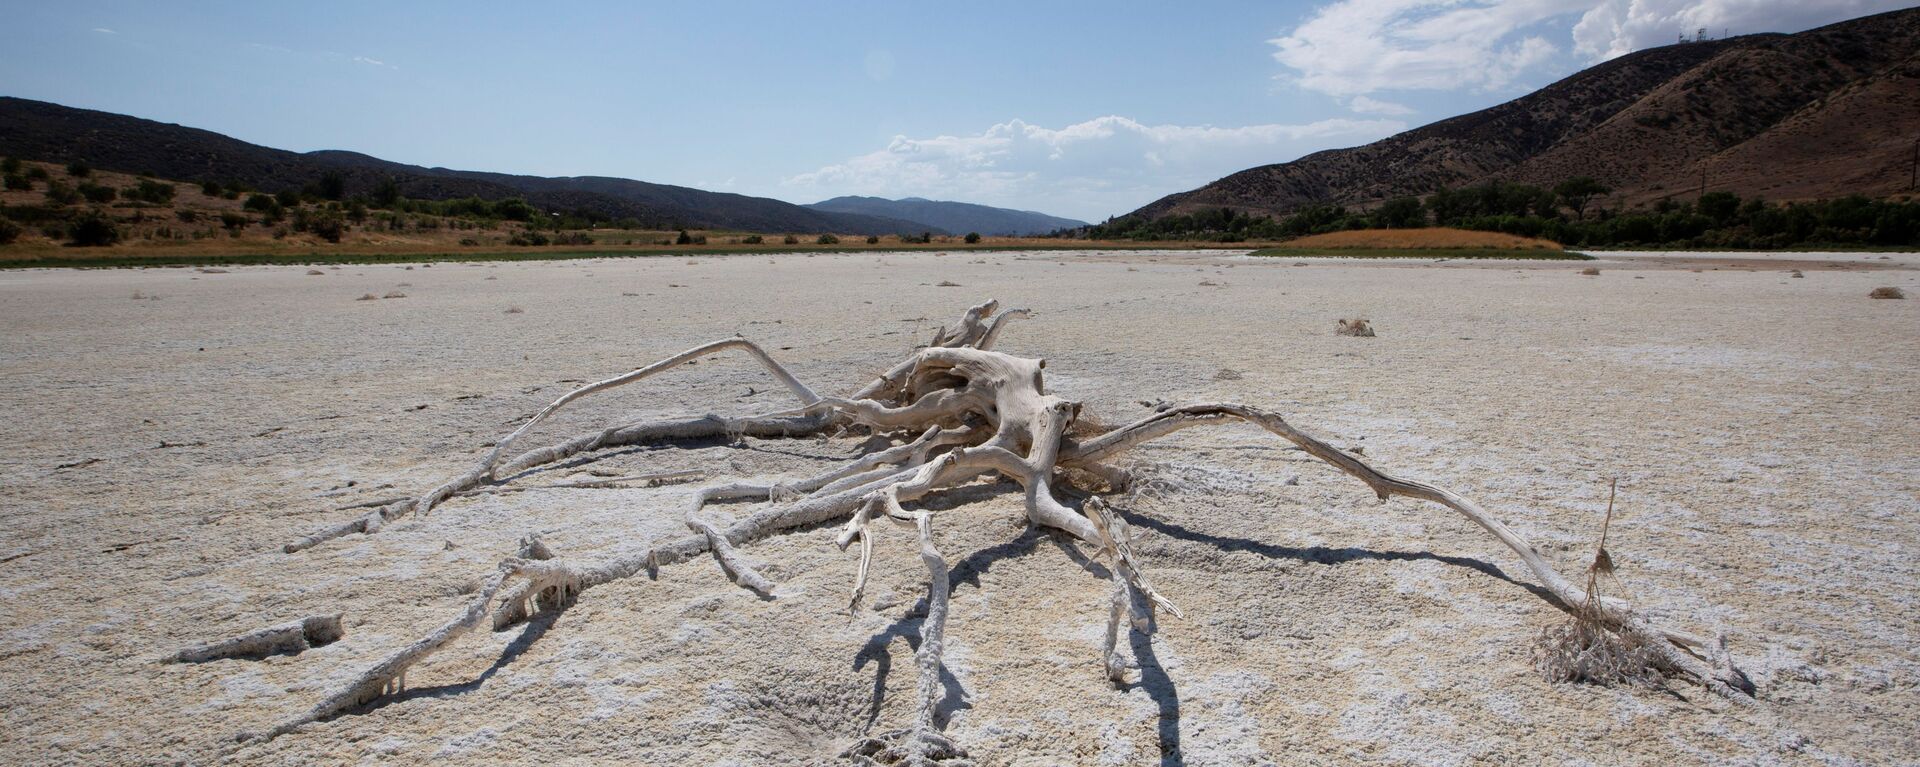 ABD'nin batı yakasında aşırı sıcak-kuraklık döngüsünde kuruyan Elizabeth Gölü (Los Angeles, Kaliforniya) - Sputnik Türkiye, 1920, 21.06.2021